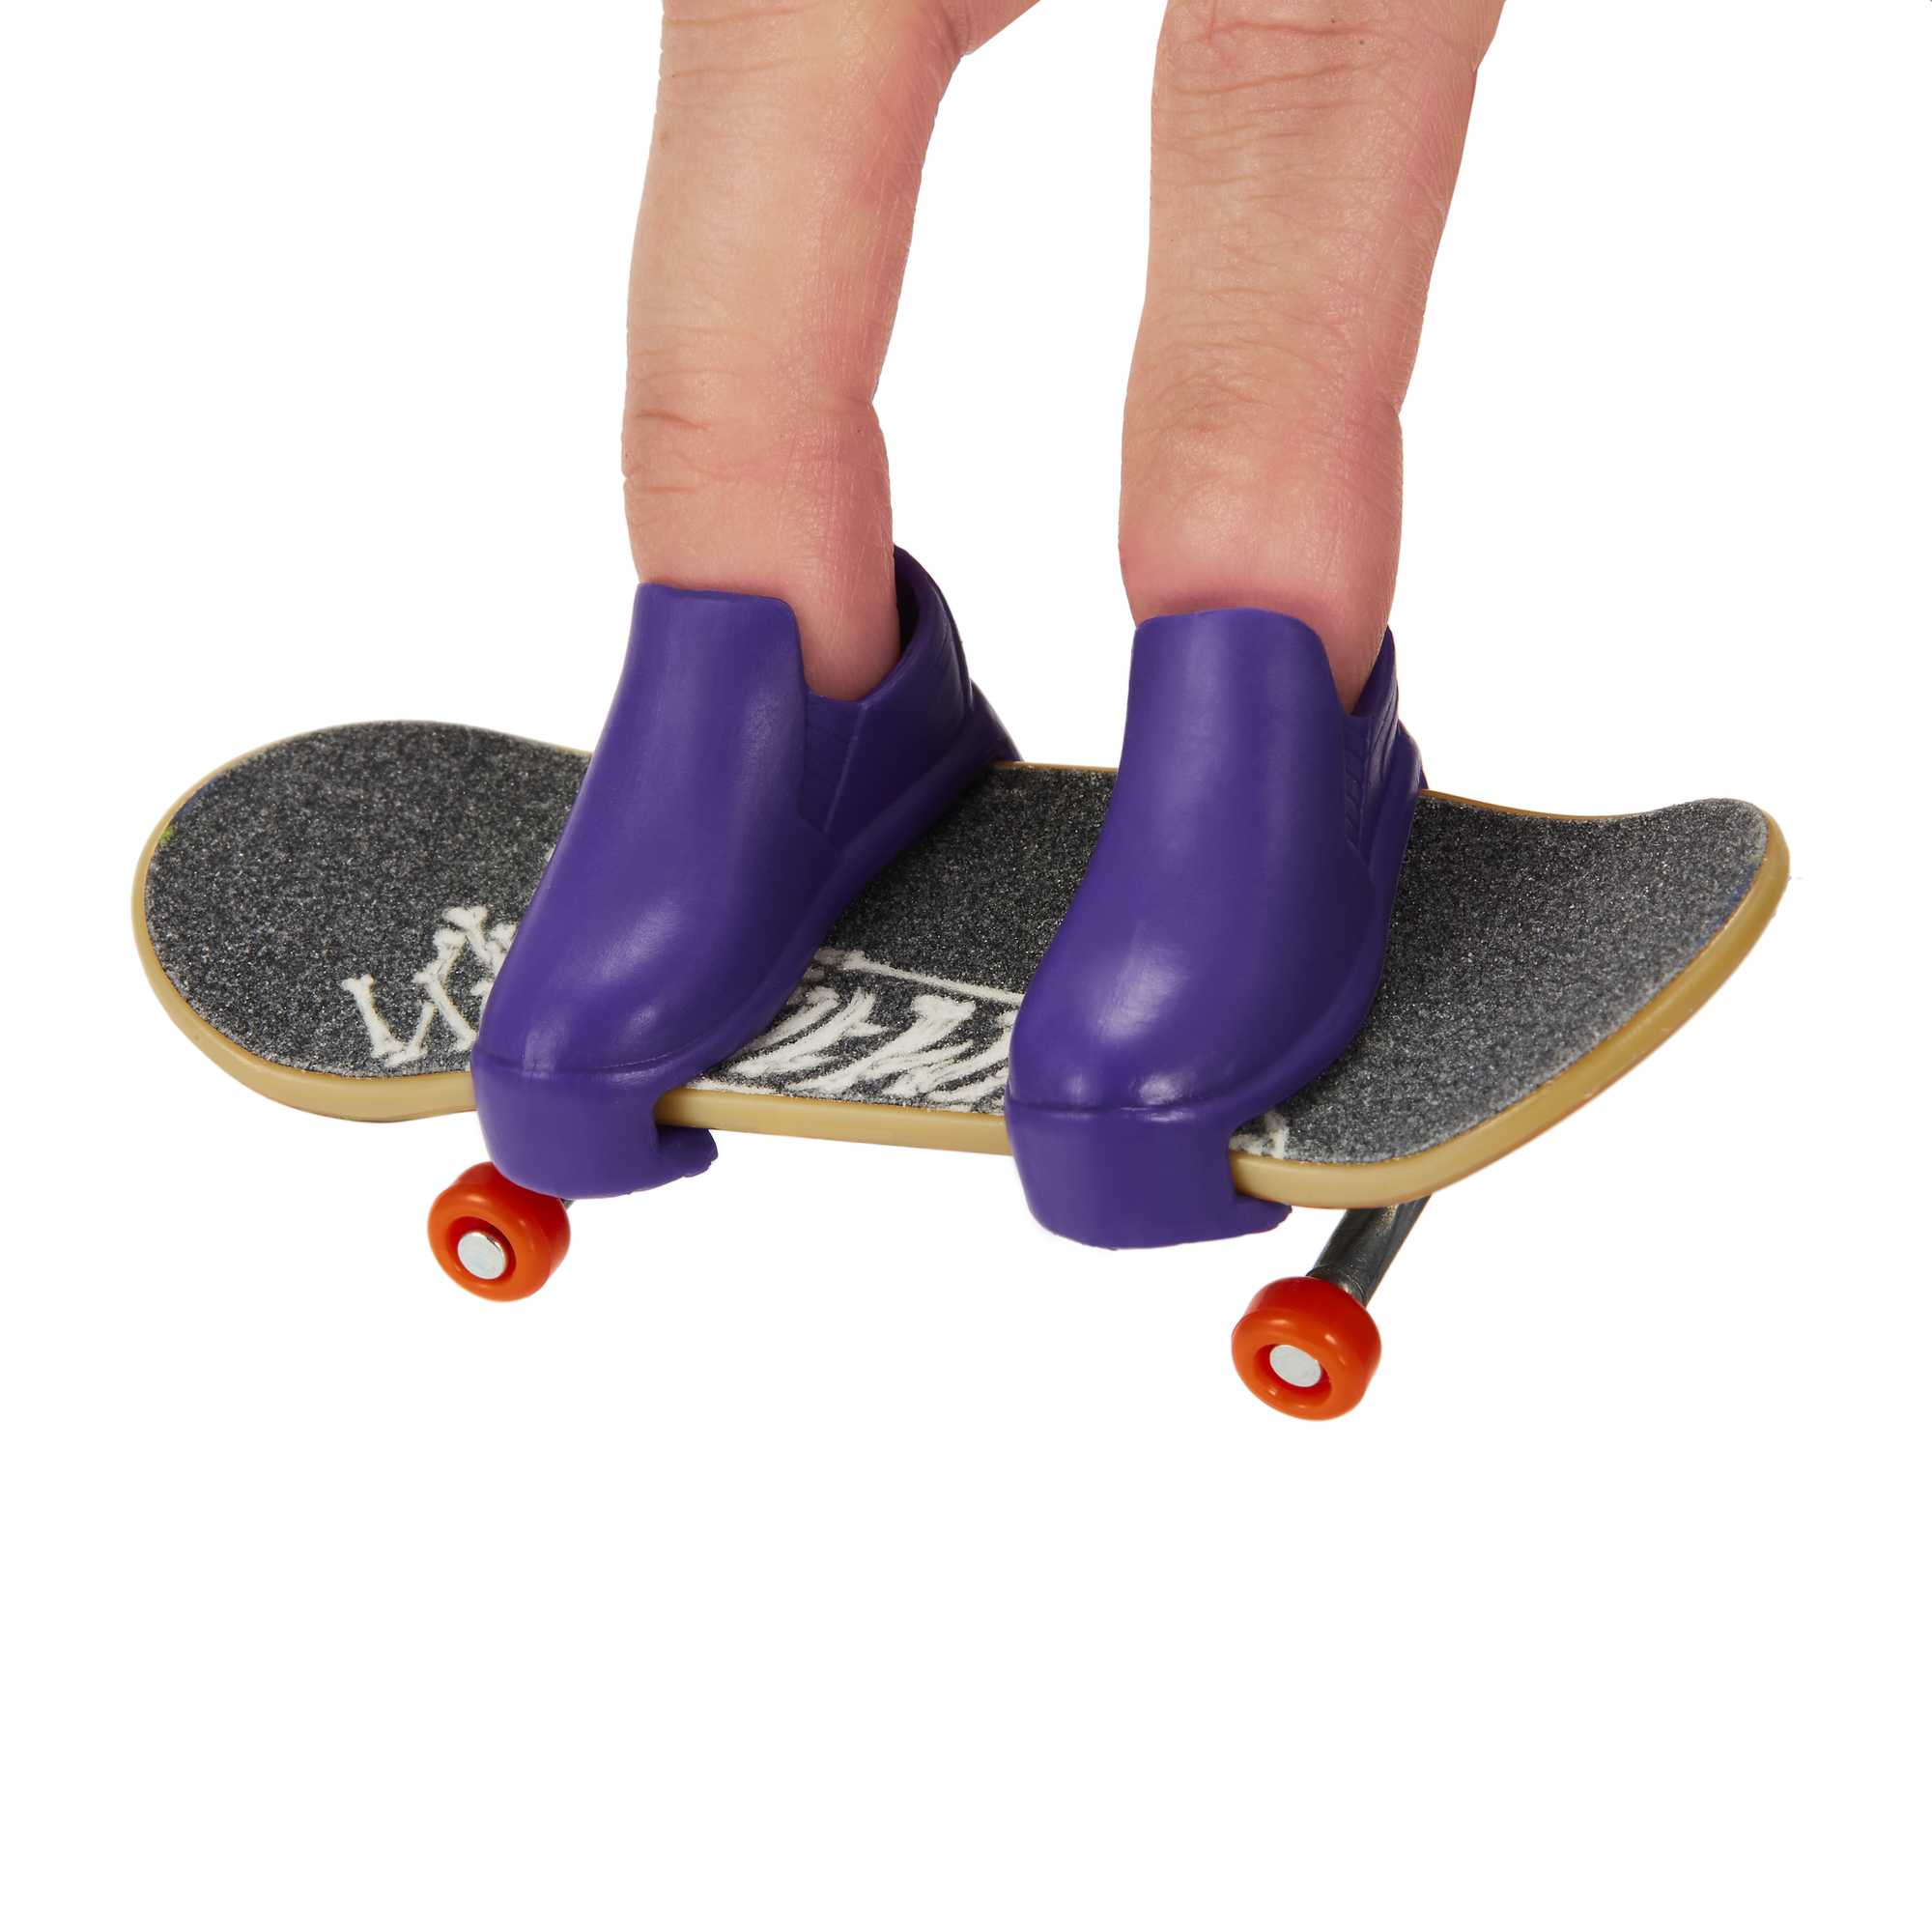 Hot Wheels Skate de Dedo c/ Tênis - Tony Hawk - Mattel